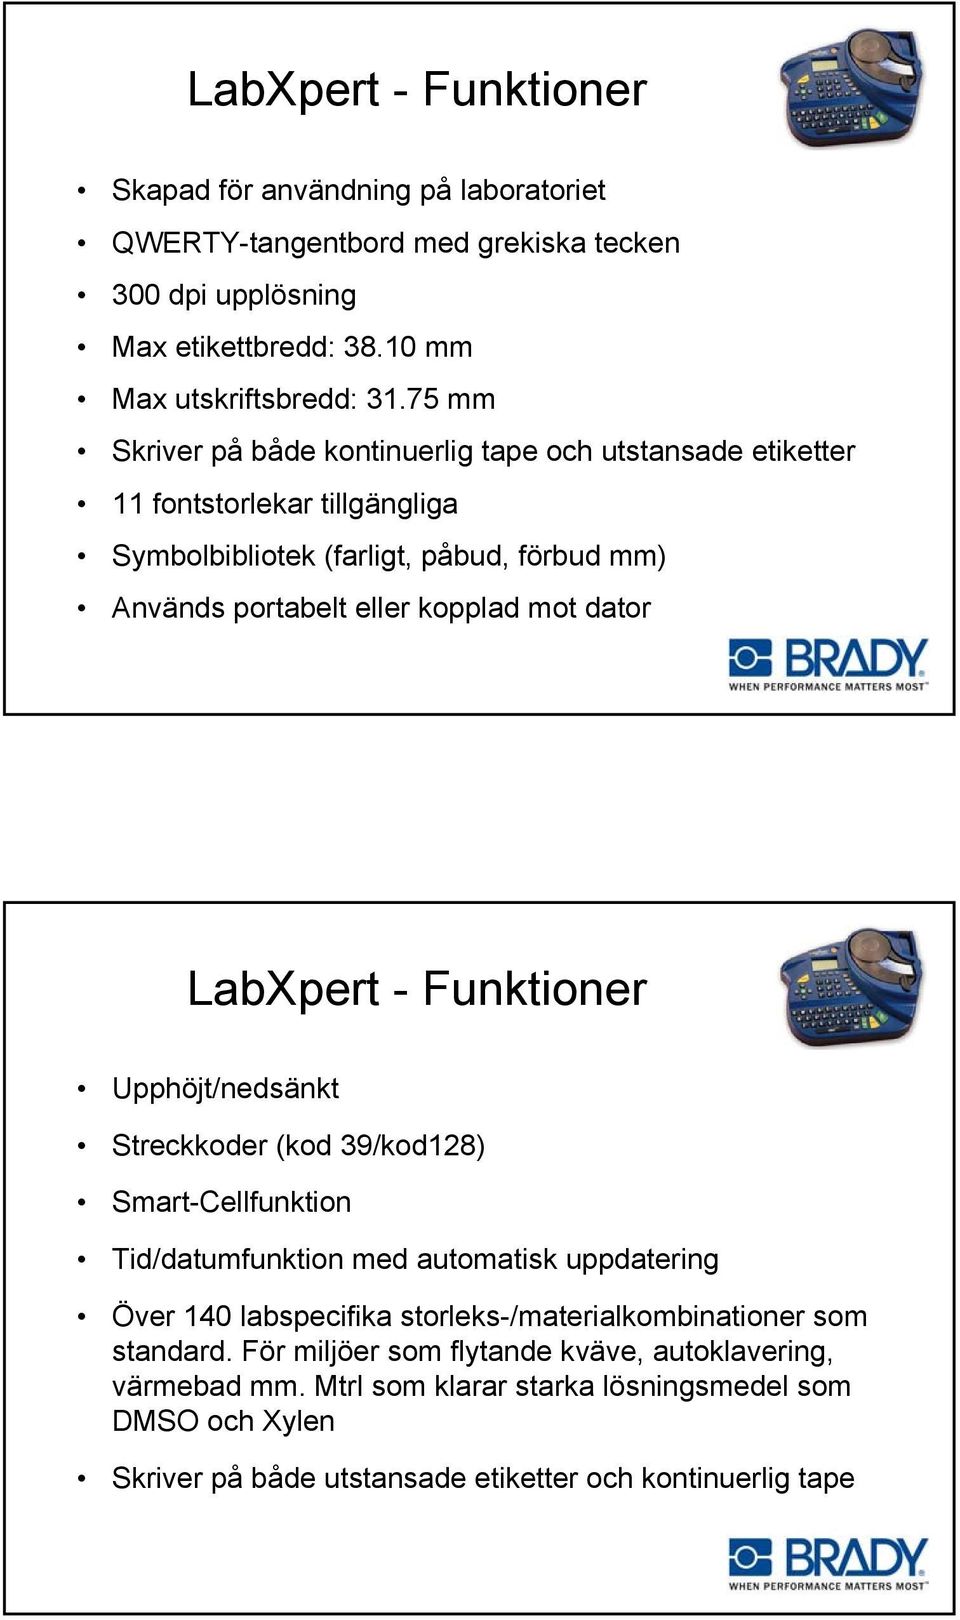 LabXpert - Funktioner Upphöjt/nedsänkt Streckkoder (kod 39/kod128) Smart-Cellfunktion Tid/datumfunktion med automatisk uppdatering Över 140 labspecifika